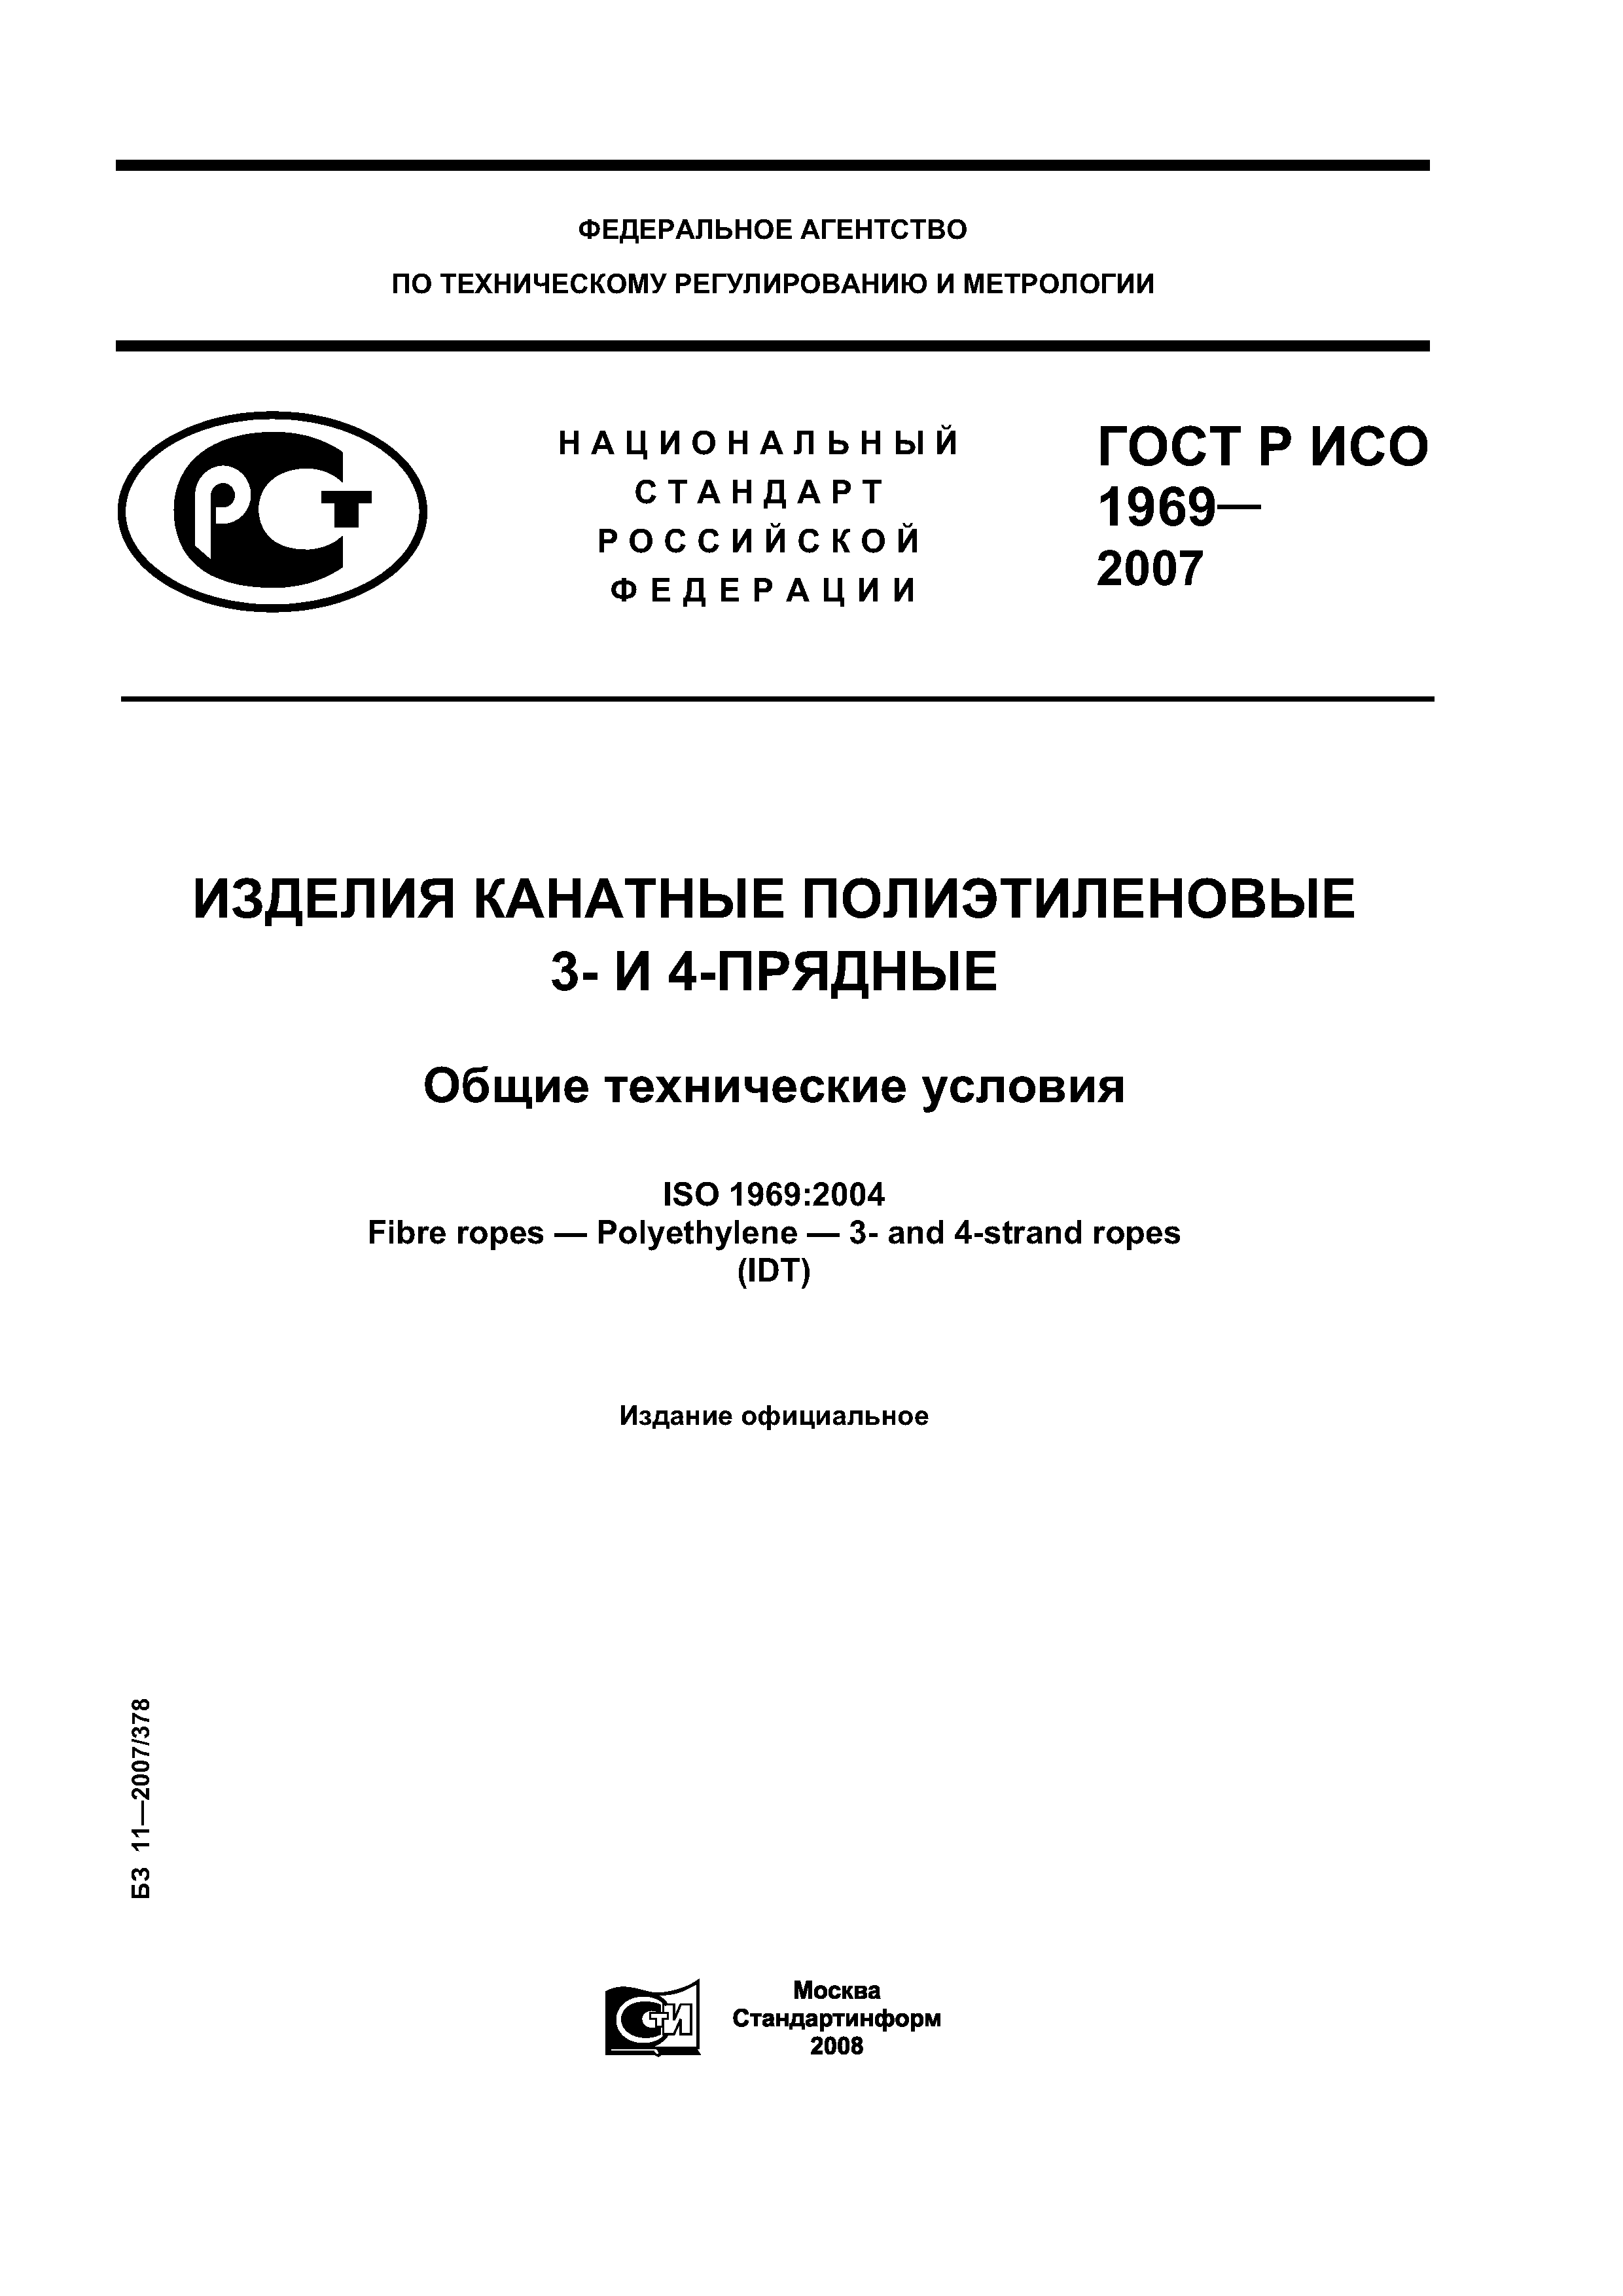 ГОСТ Р ИСО 1969-2007